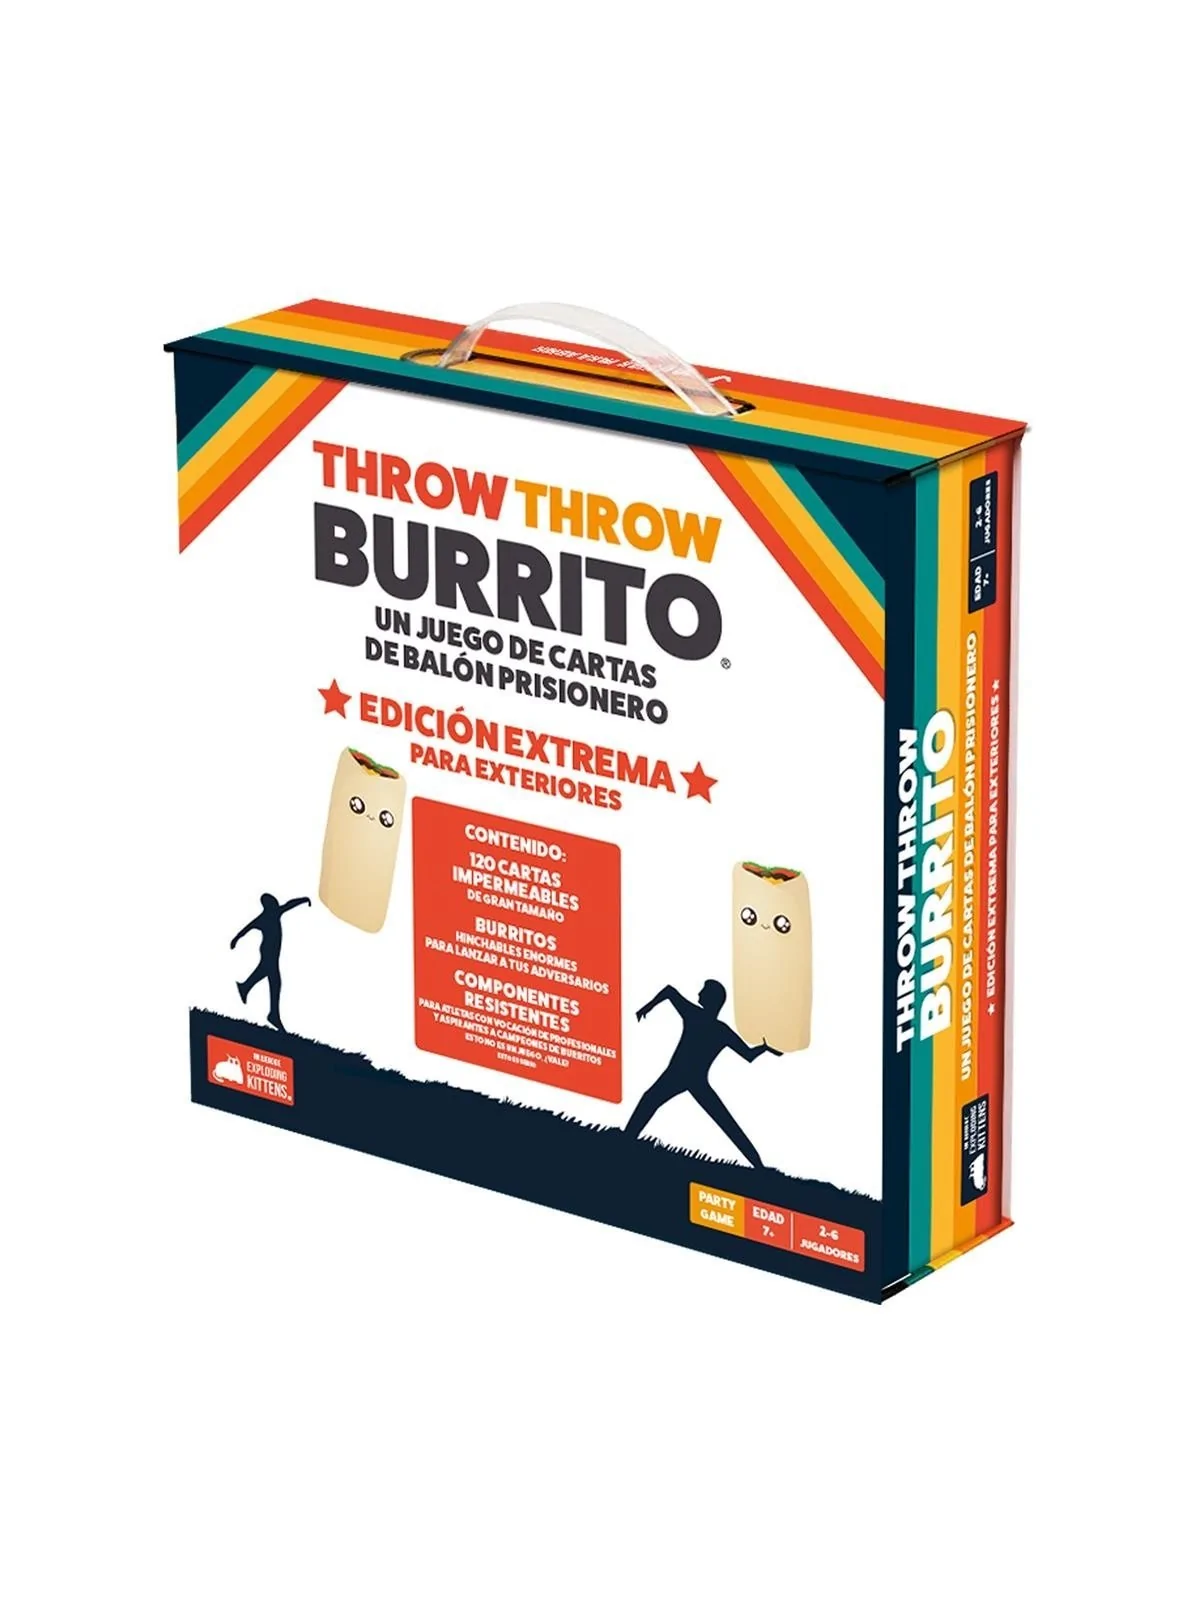 Comprar Throw Throw Burrito Ed. Extrema para Exteriores barato al mejo